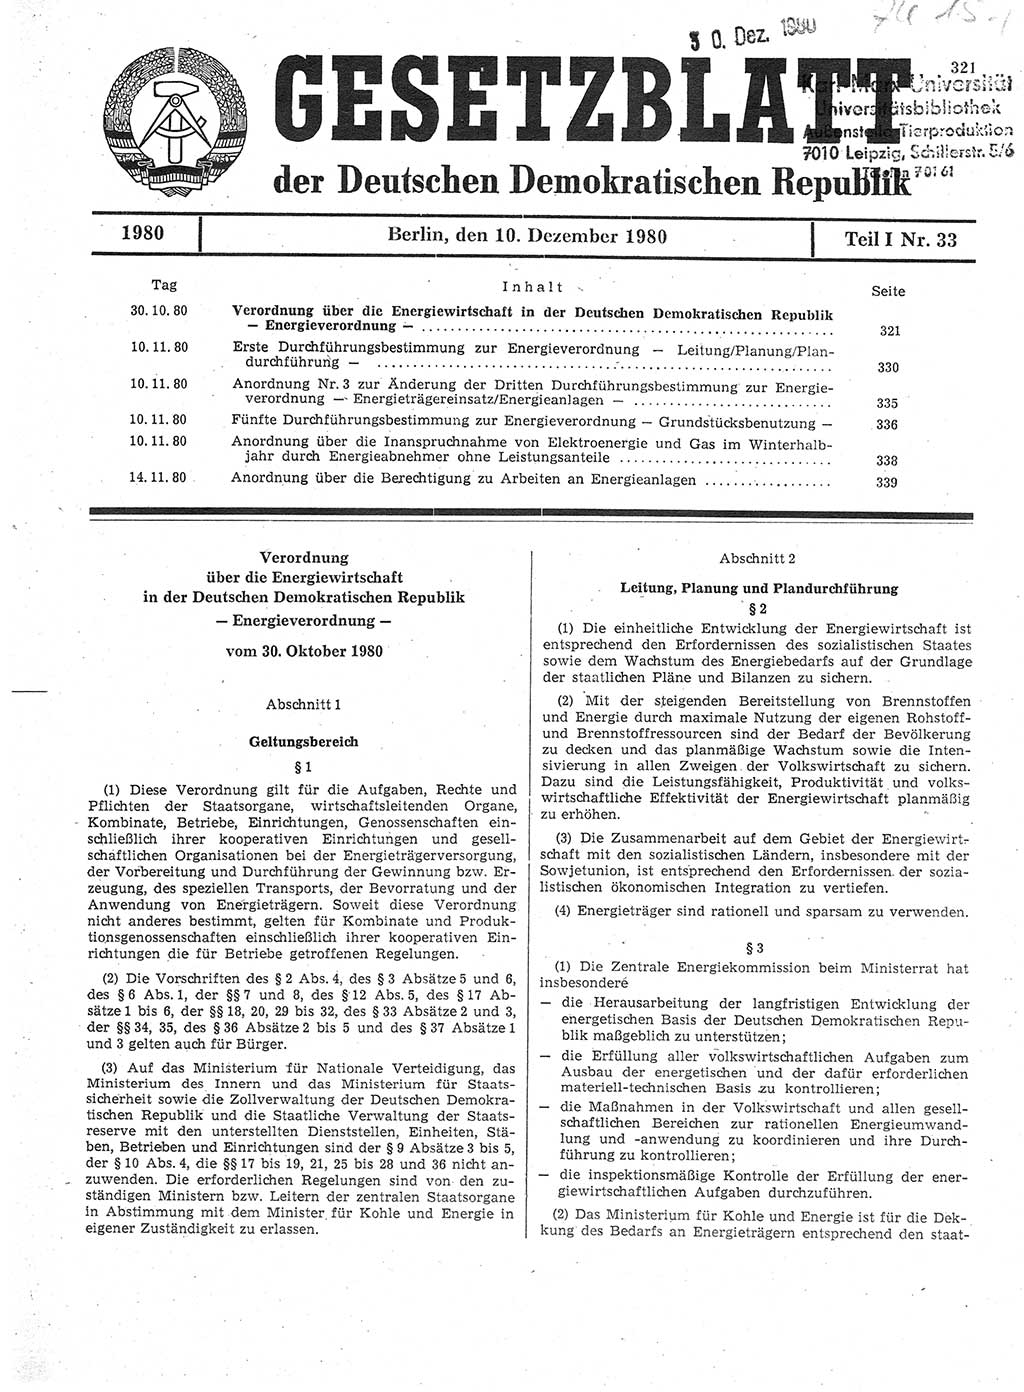 Gesetzblatt (GBl.) der Deutschen Demokratischen Republik (DDR) Teil Ⅰ 1980, Seite 321 (GBl. DDR Ⅰ 1980, S. 321)